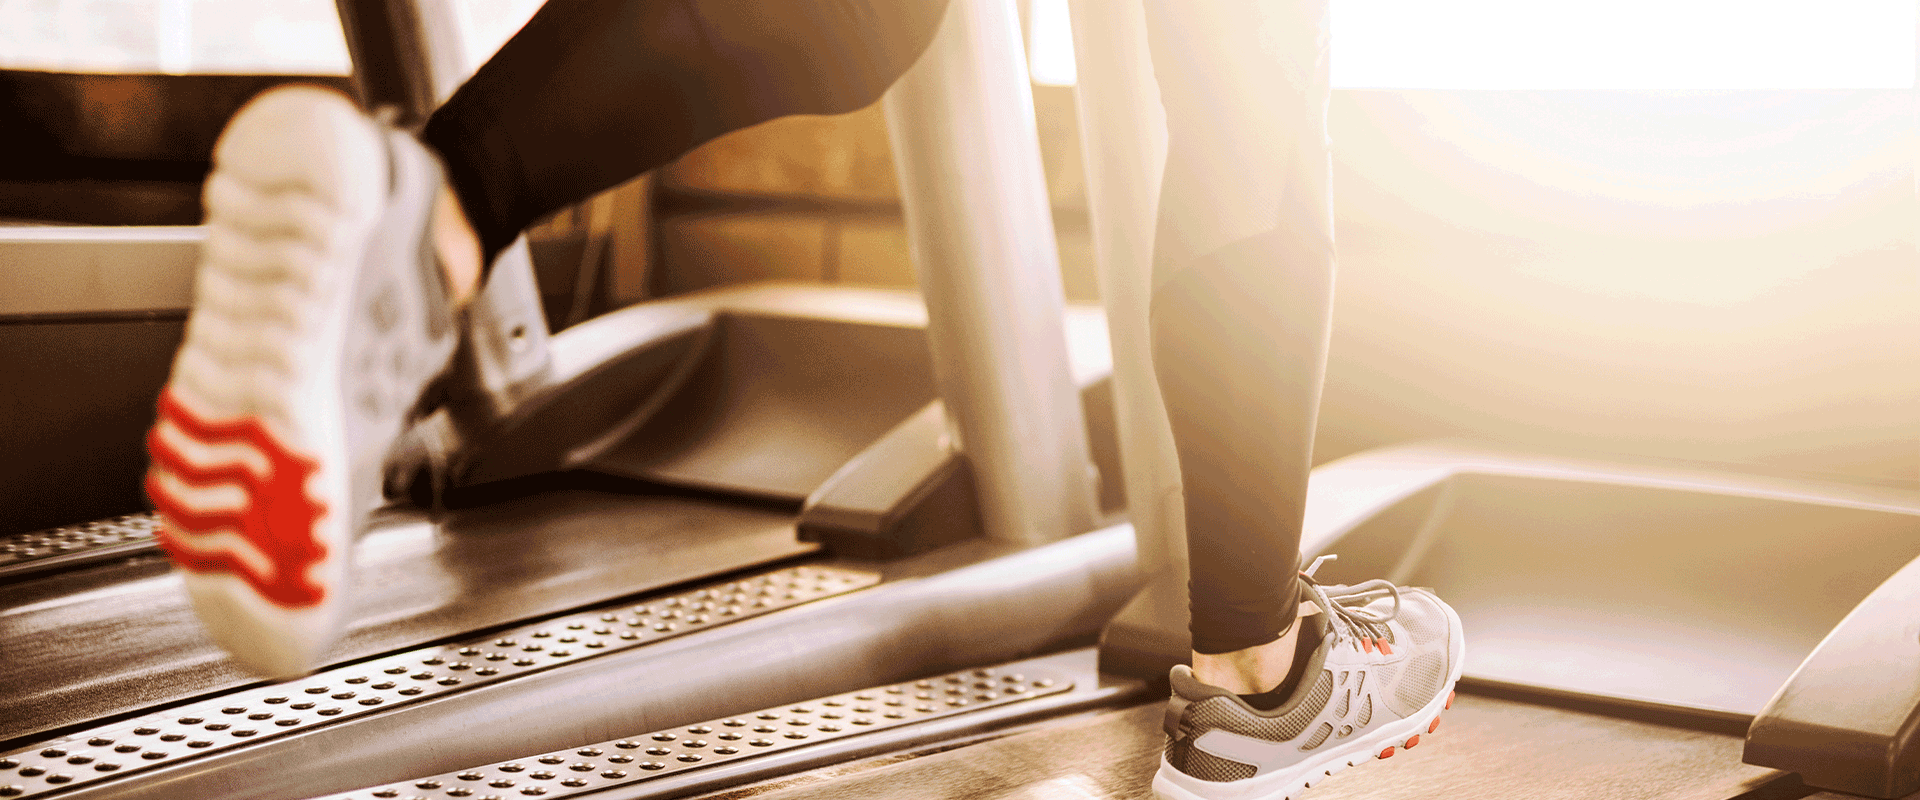 treadmill fitness